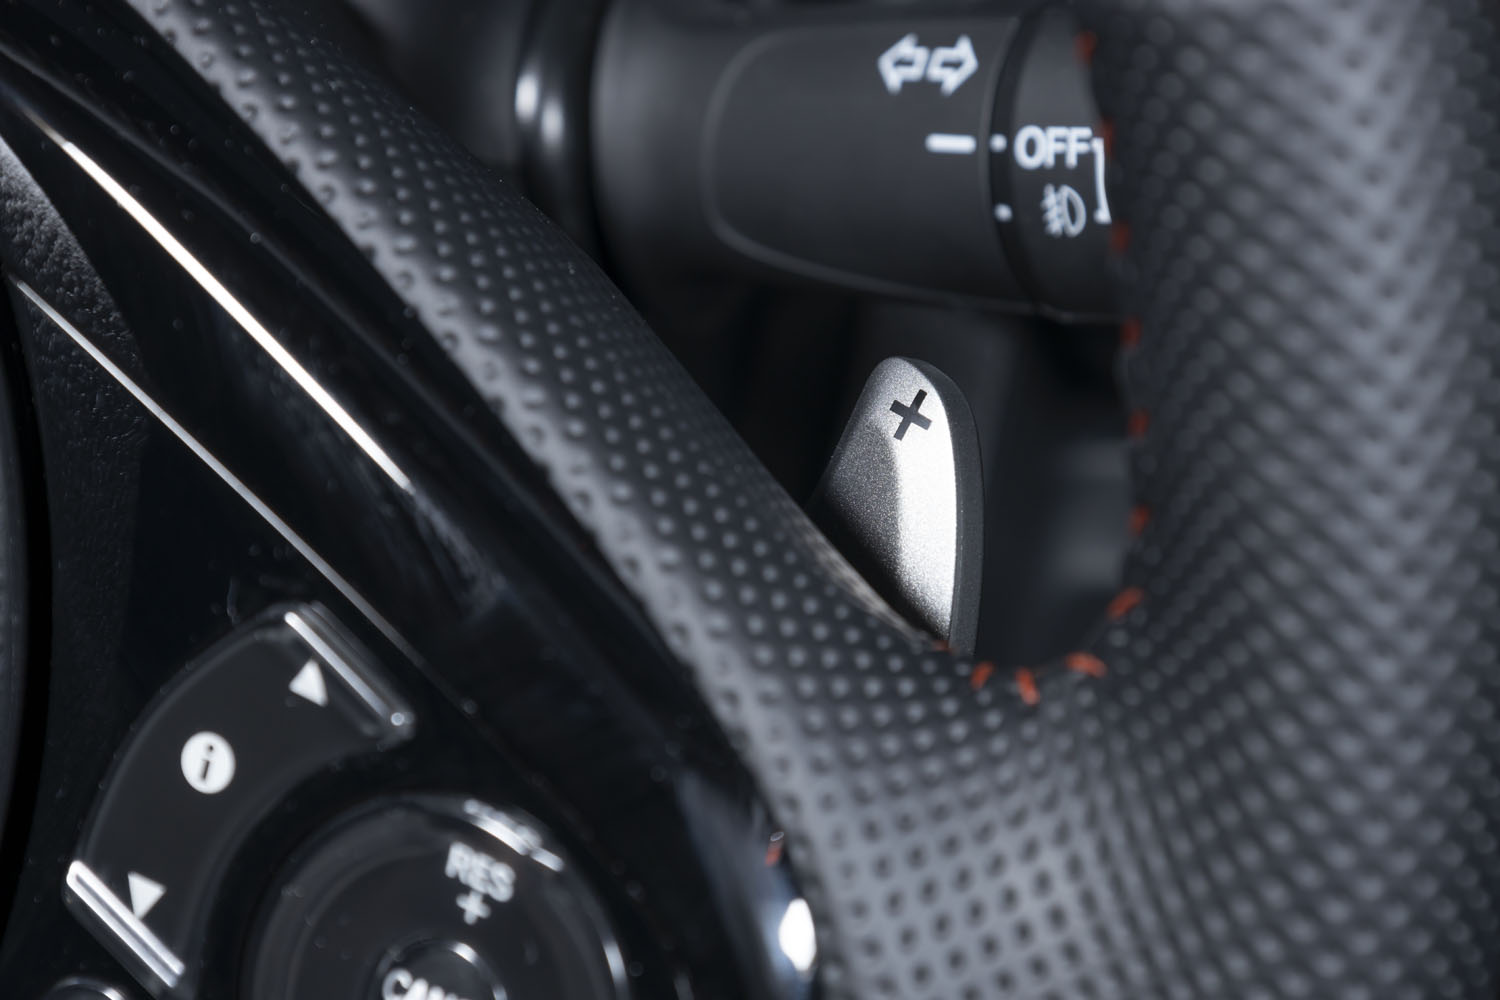 CVTについては、「RS」のみ「S」レンジのシフトコントロールをよりスポーティーなものとする専用の制御を採用。ステアリングホイールにシフトパドルが装備されるのも同車の特徴だ。